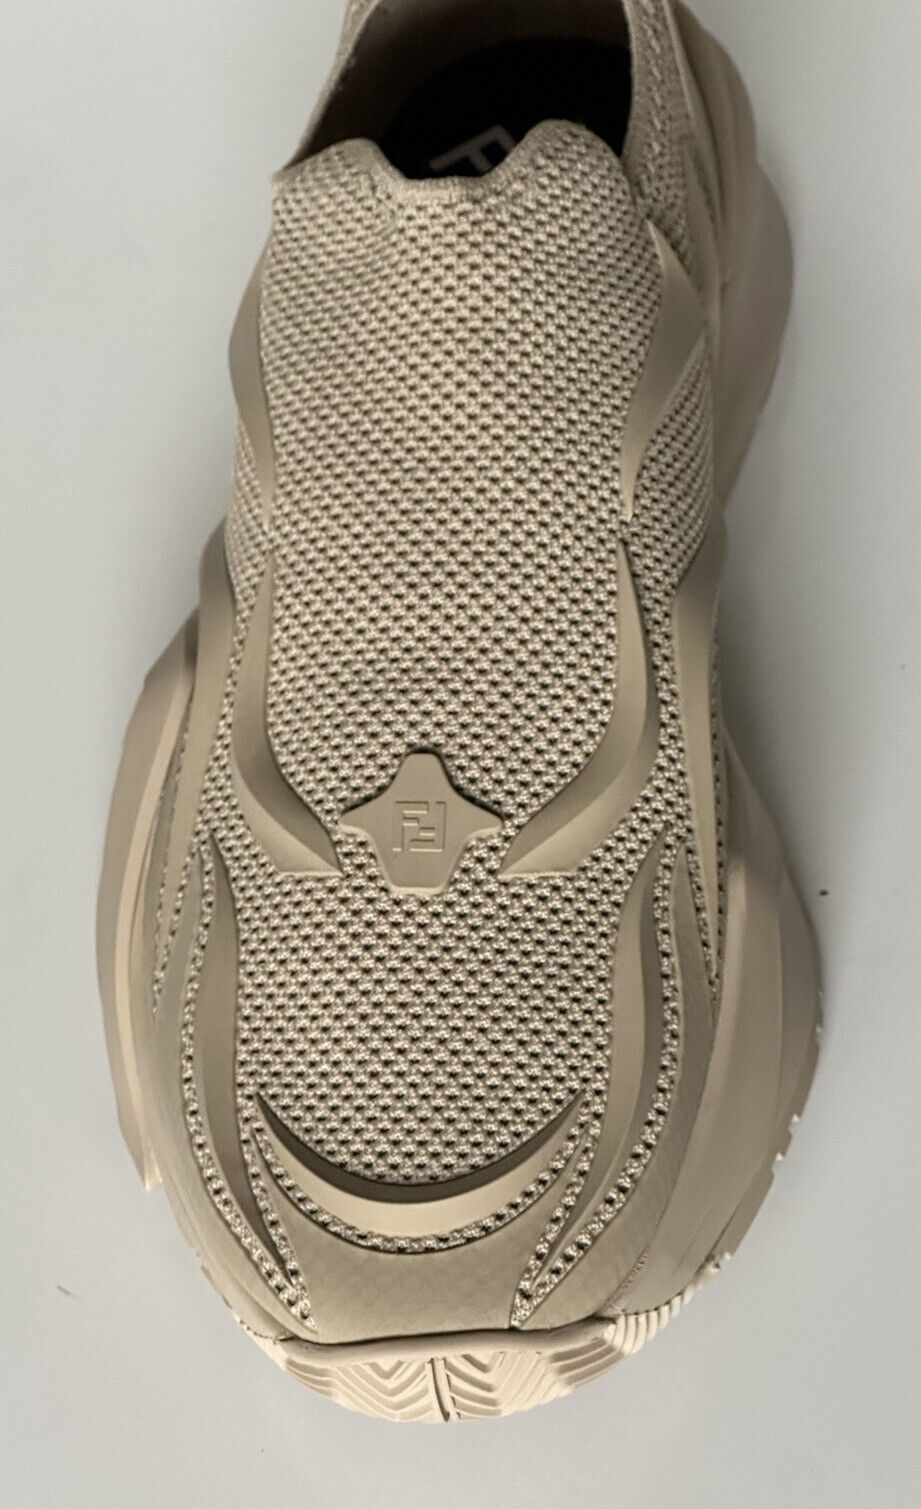 Мужские бежевые кроссовки Fendi Flow NIB 1050 из ткани 12 США (45 евро) 7E1504 Италия 